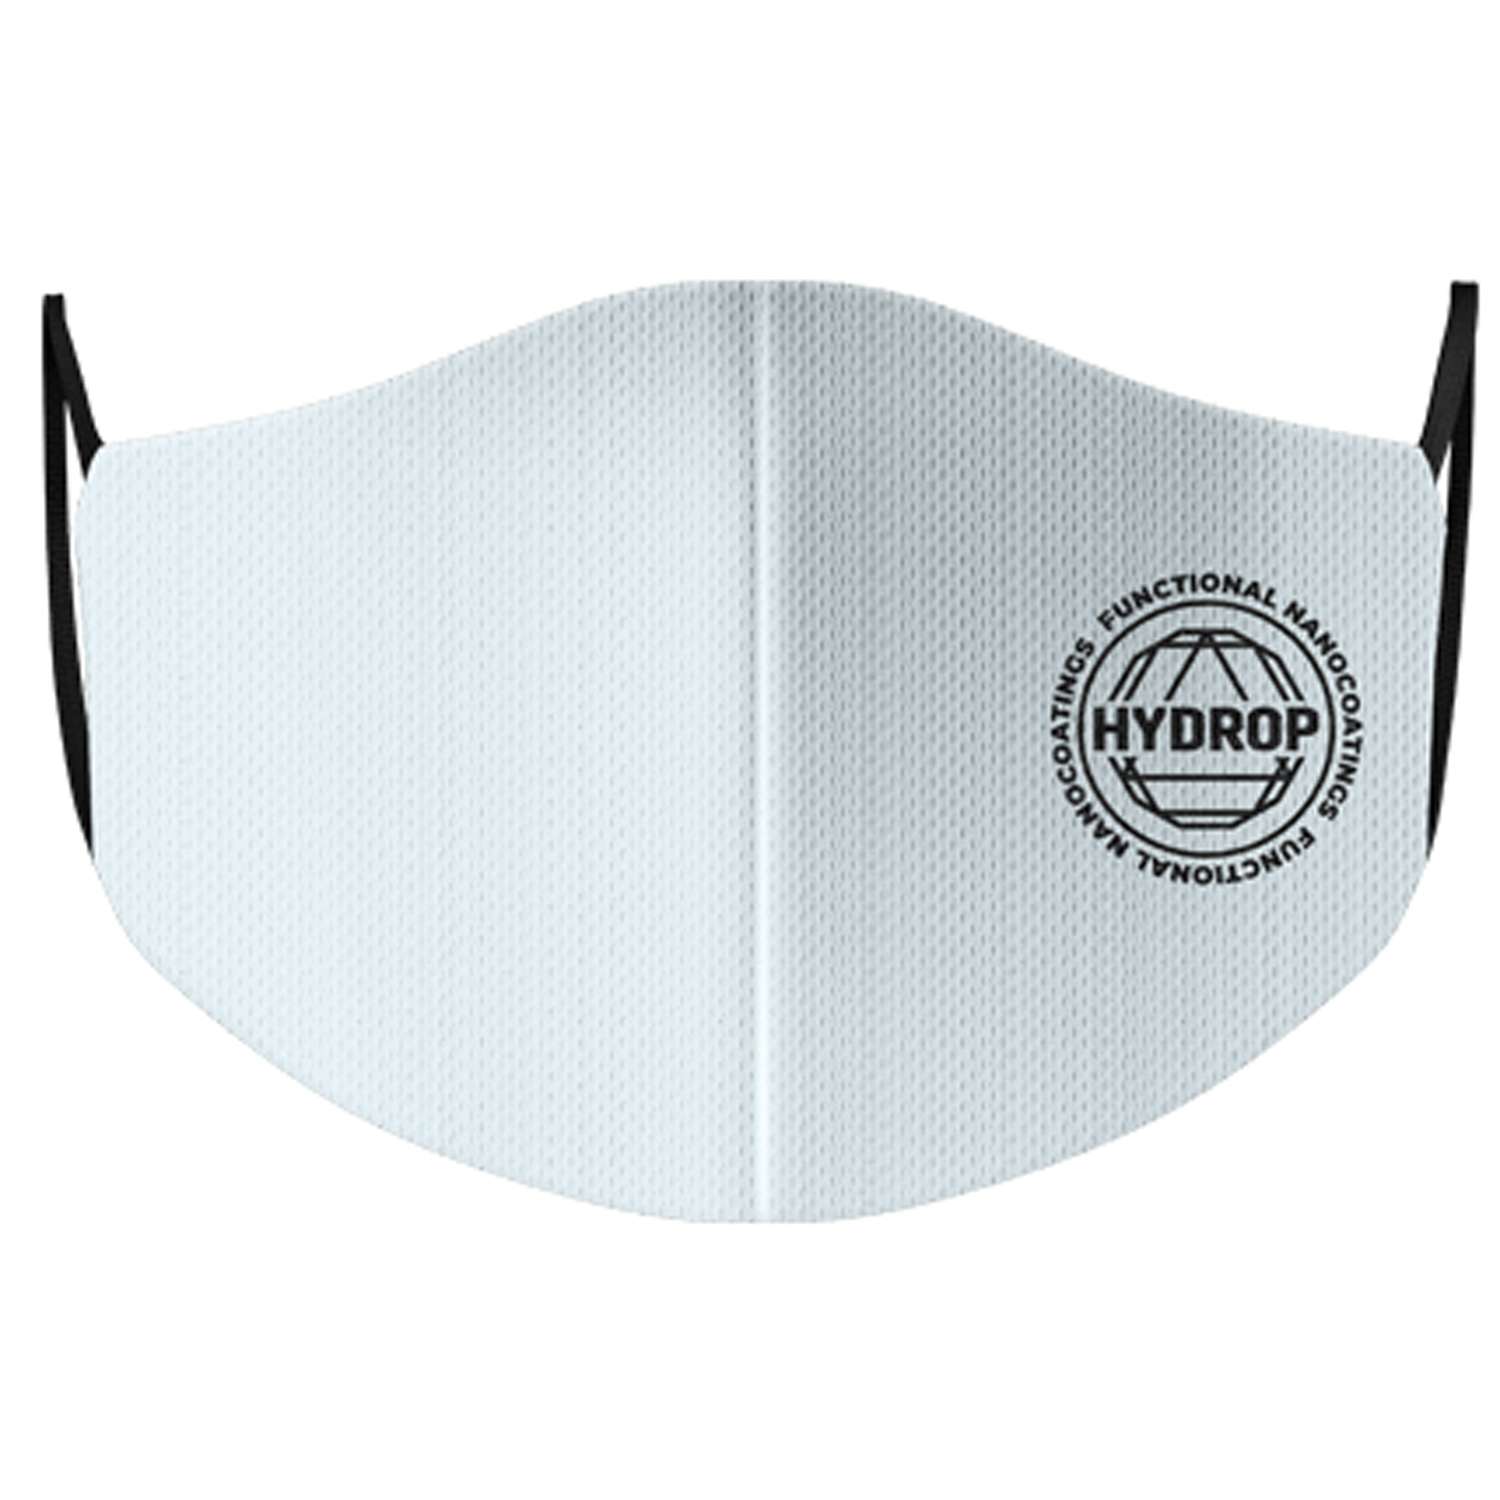 Многоразовая маска для лица HYDROP Respirator 800 summer - фото 1